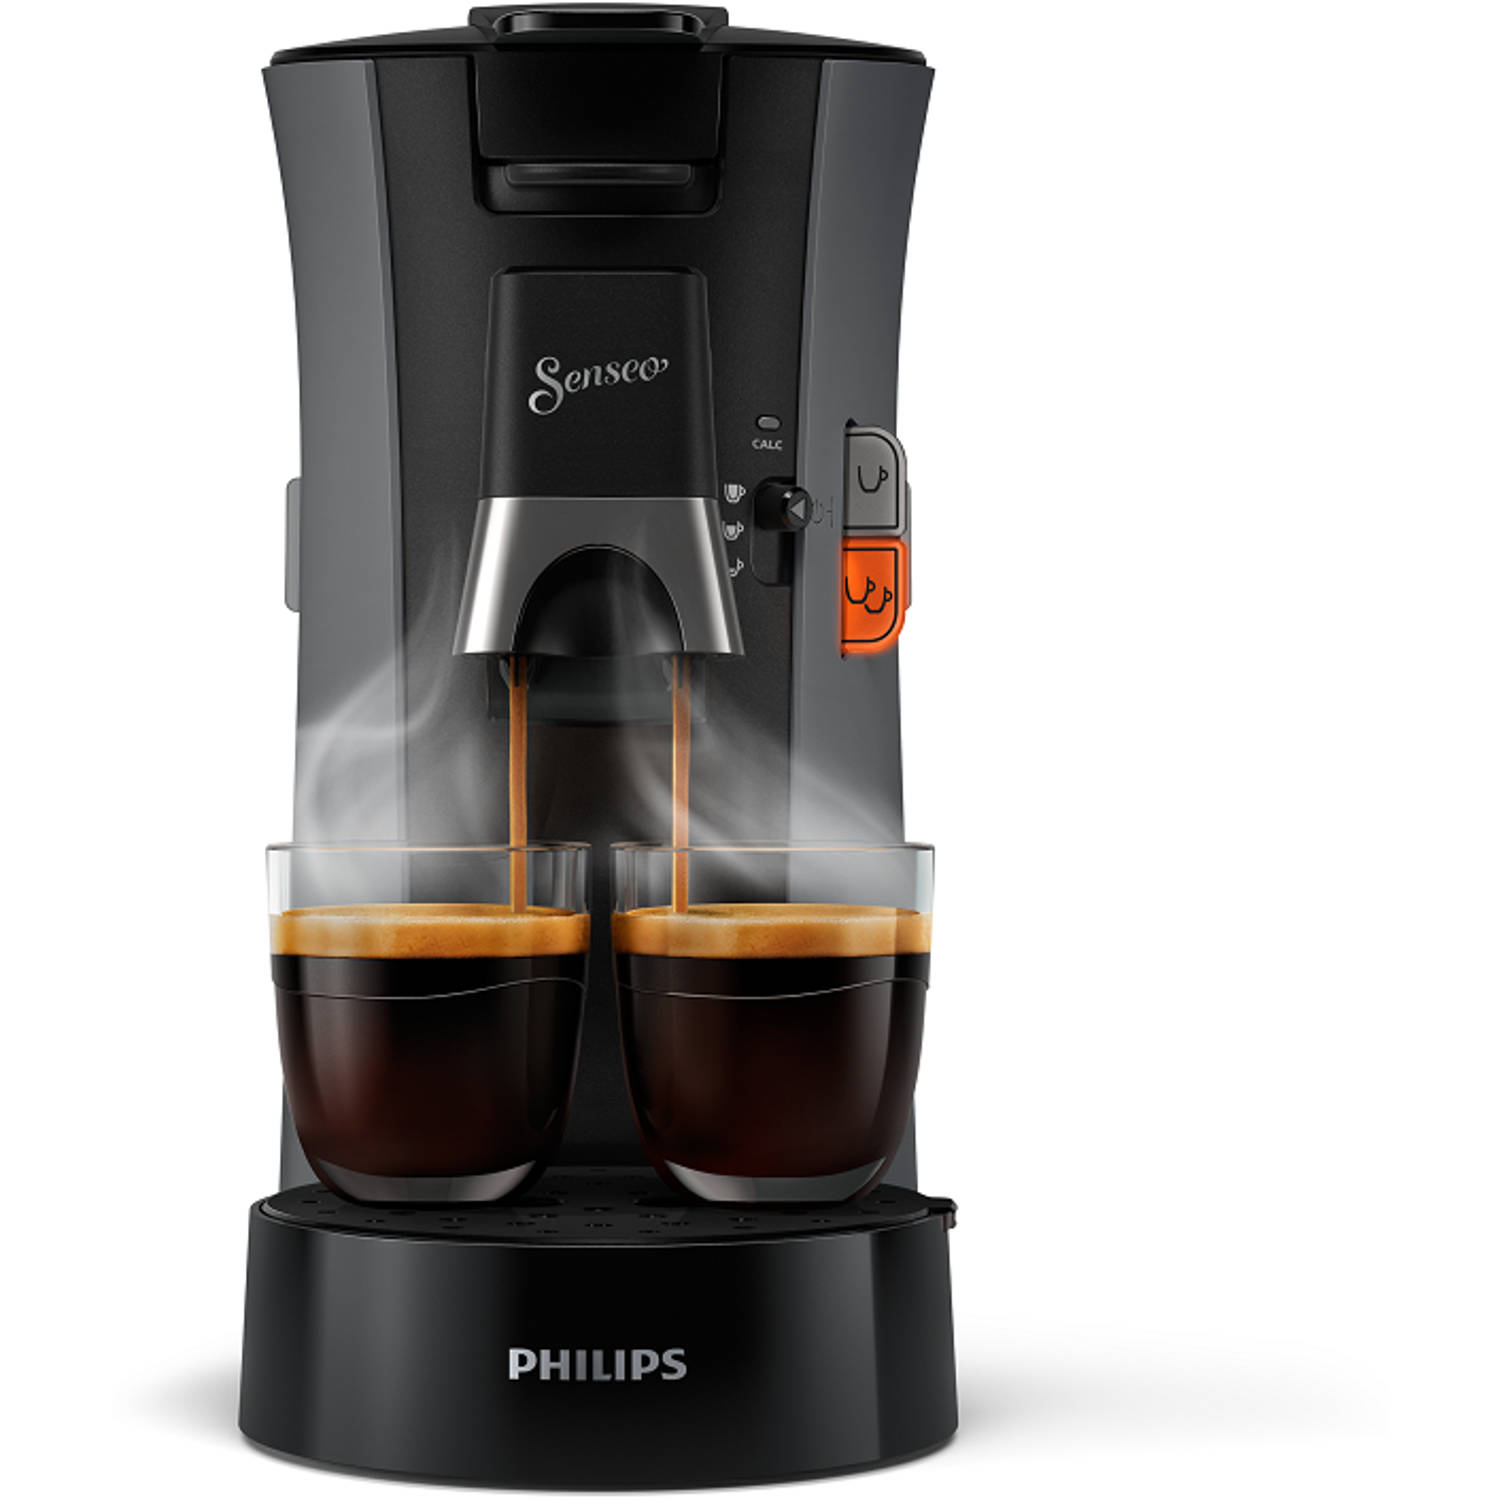 Consulaat druk lijden Philips SENSEO® Select koffiepadmachine CSA230/50 donkergrijs | Blokker